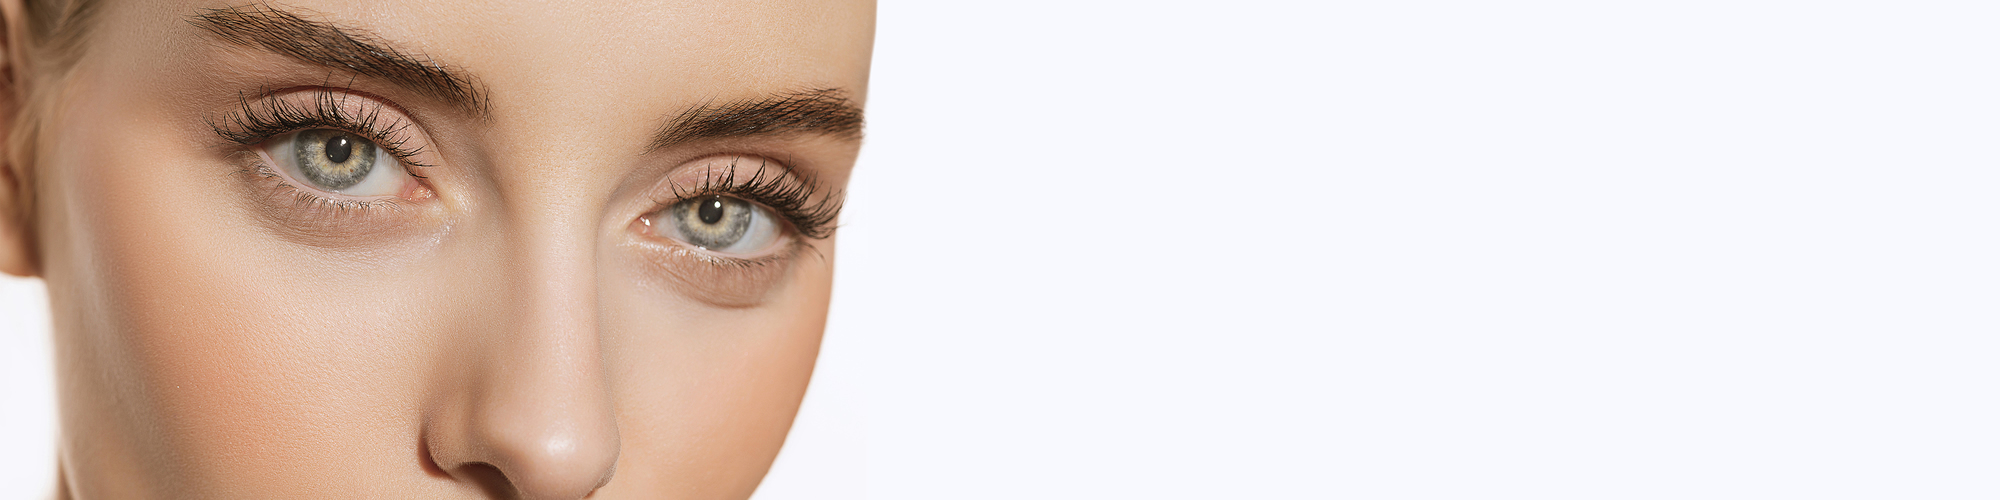 Eyelid surgery | Double eyelid surgery | Dallas, TX | Dr. Azouz